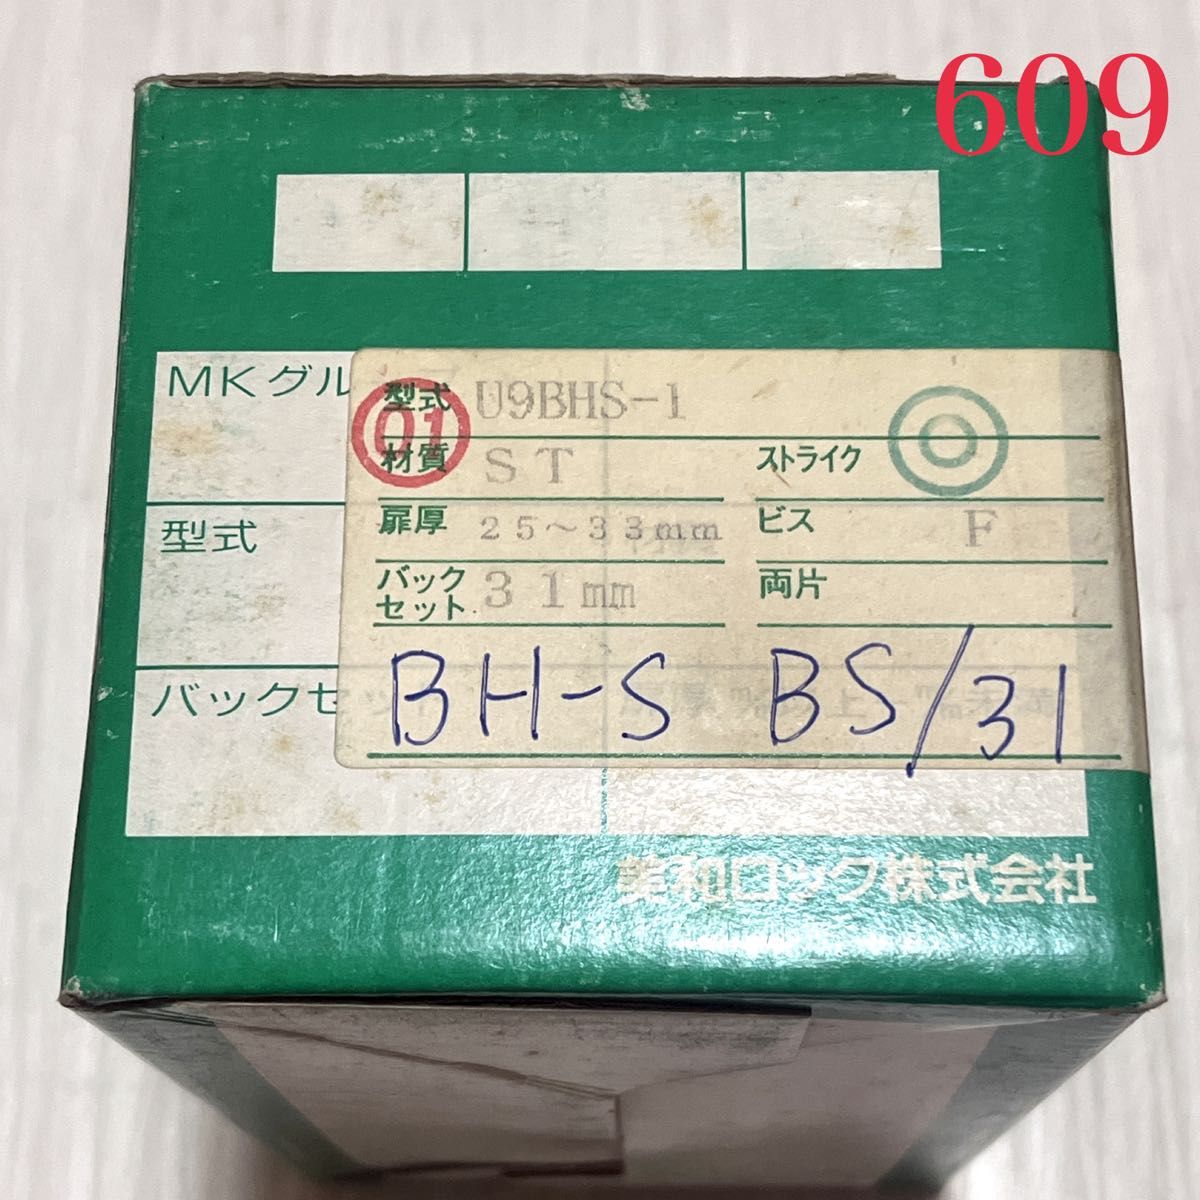 【609】MIWA 美和ロック U9 BHS-1 キー３本